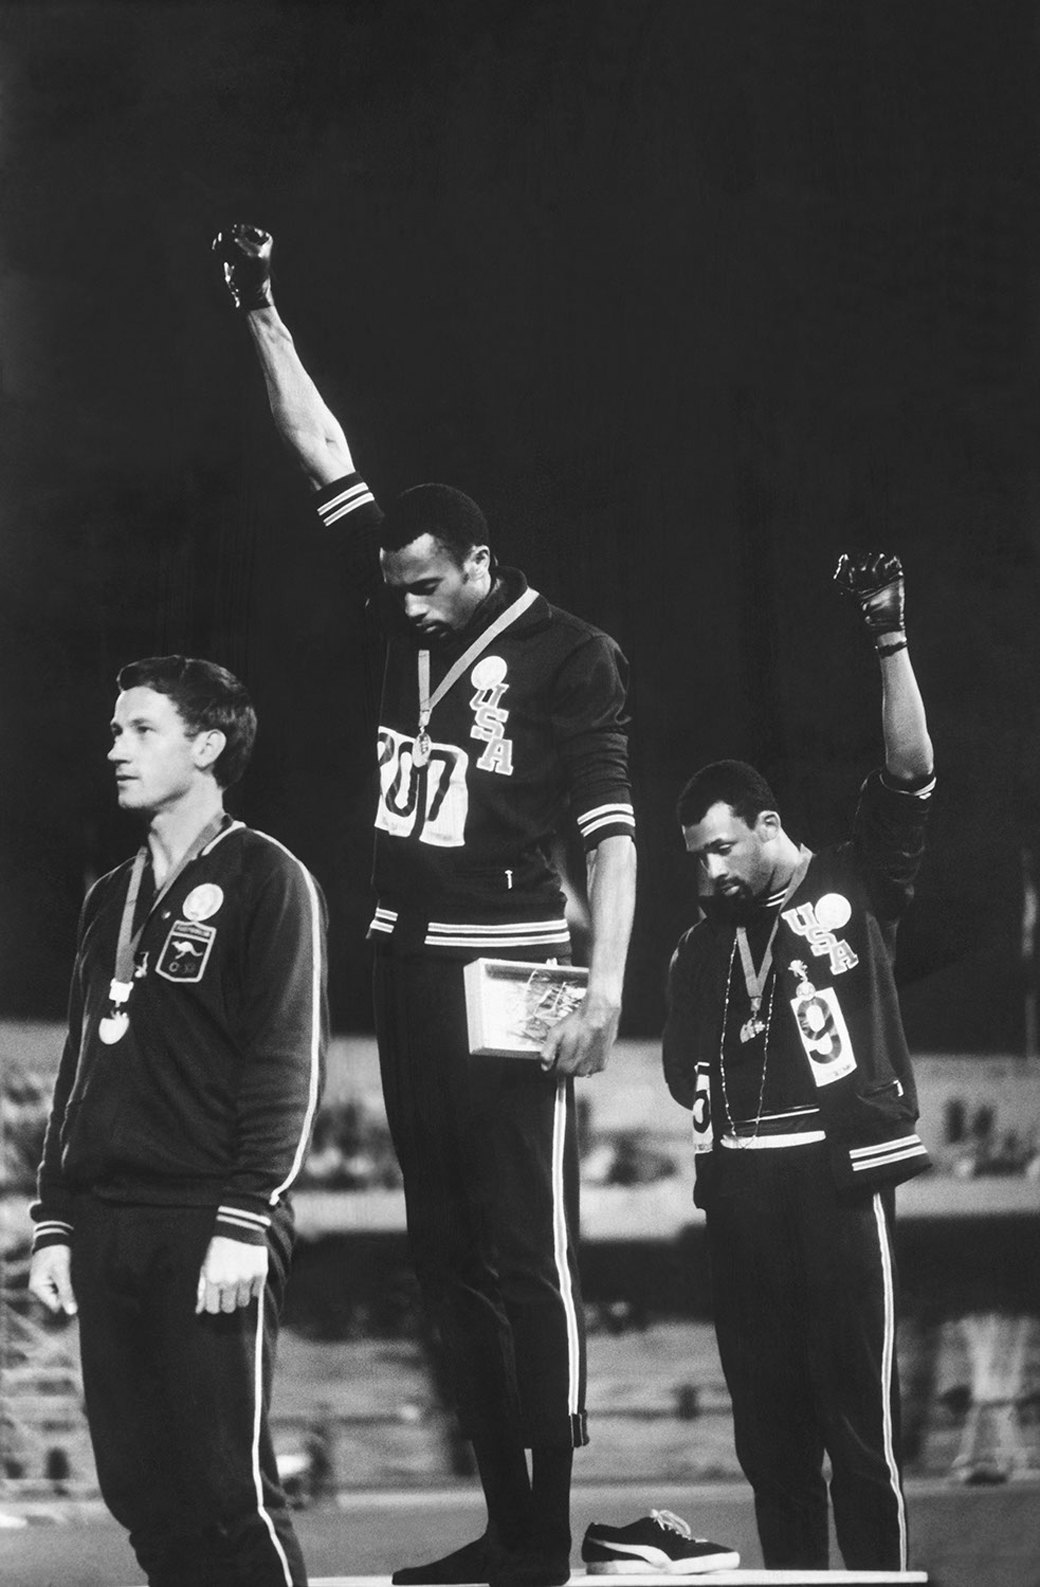 Знак солидарности с движением за права чернокожего населения США. Олимпийские игры в Мехико. 1968 год. Джон Доминис